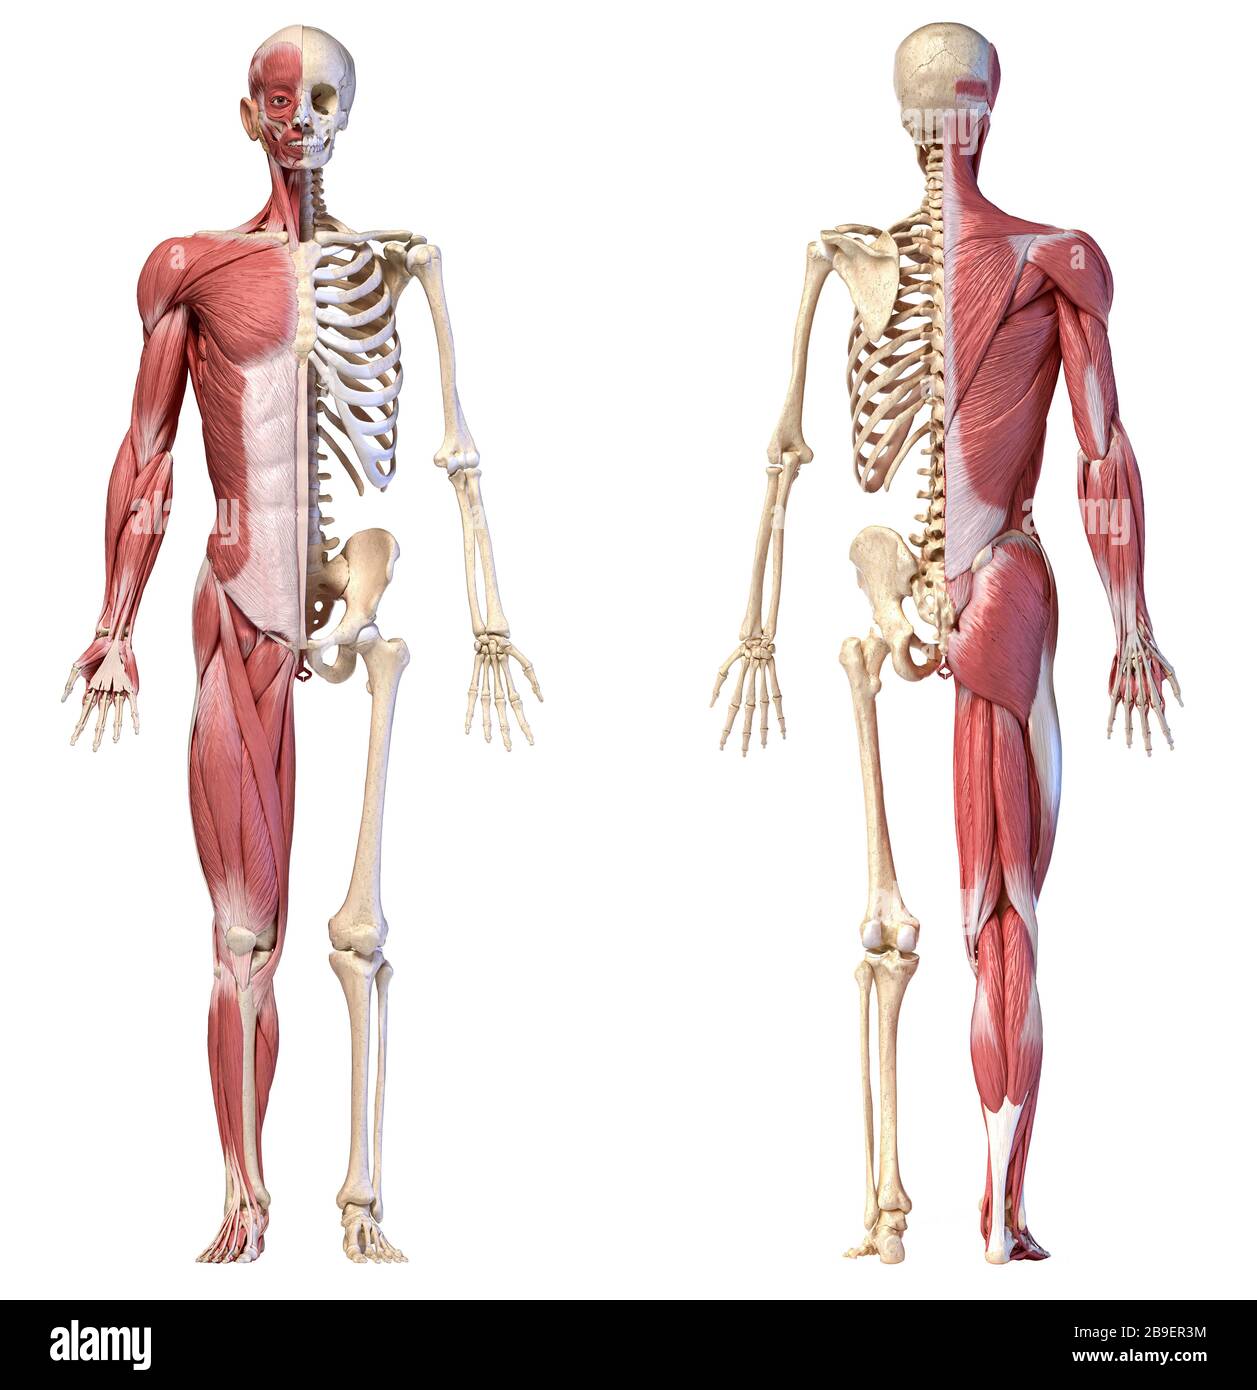 Anatomie der menschlichen männlichen Muskel- und Skelettsysteme, Vorder- und Rückansicht auf weißem Hintergrund. Stockfoto